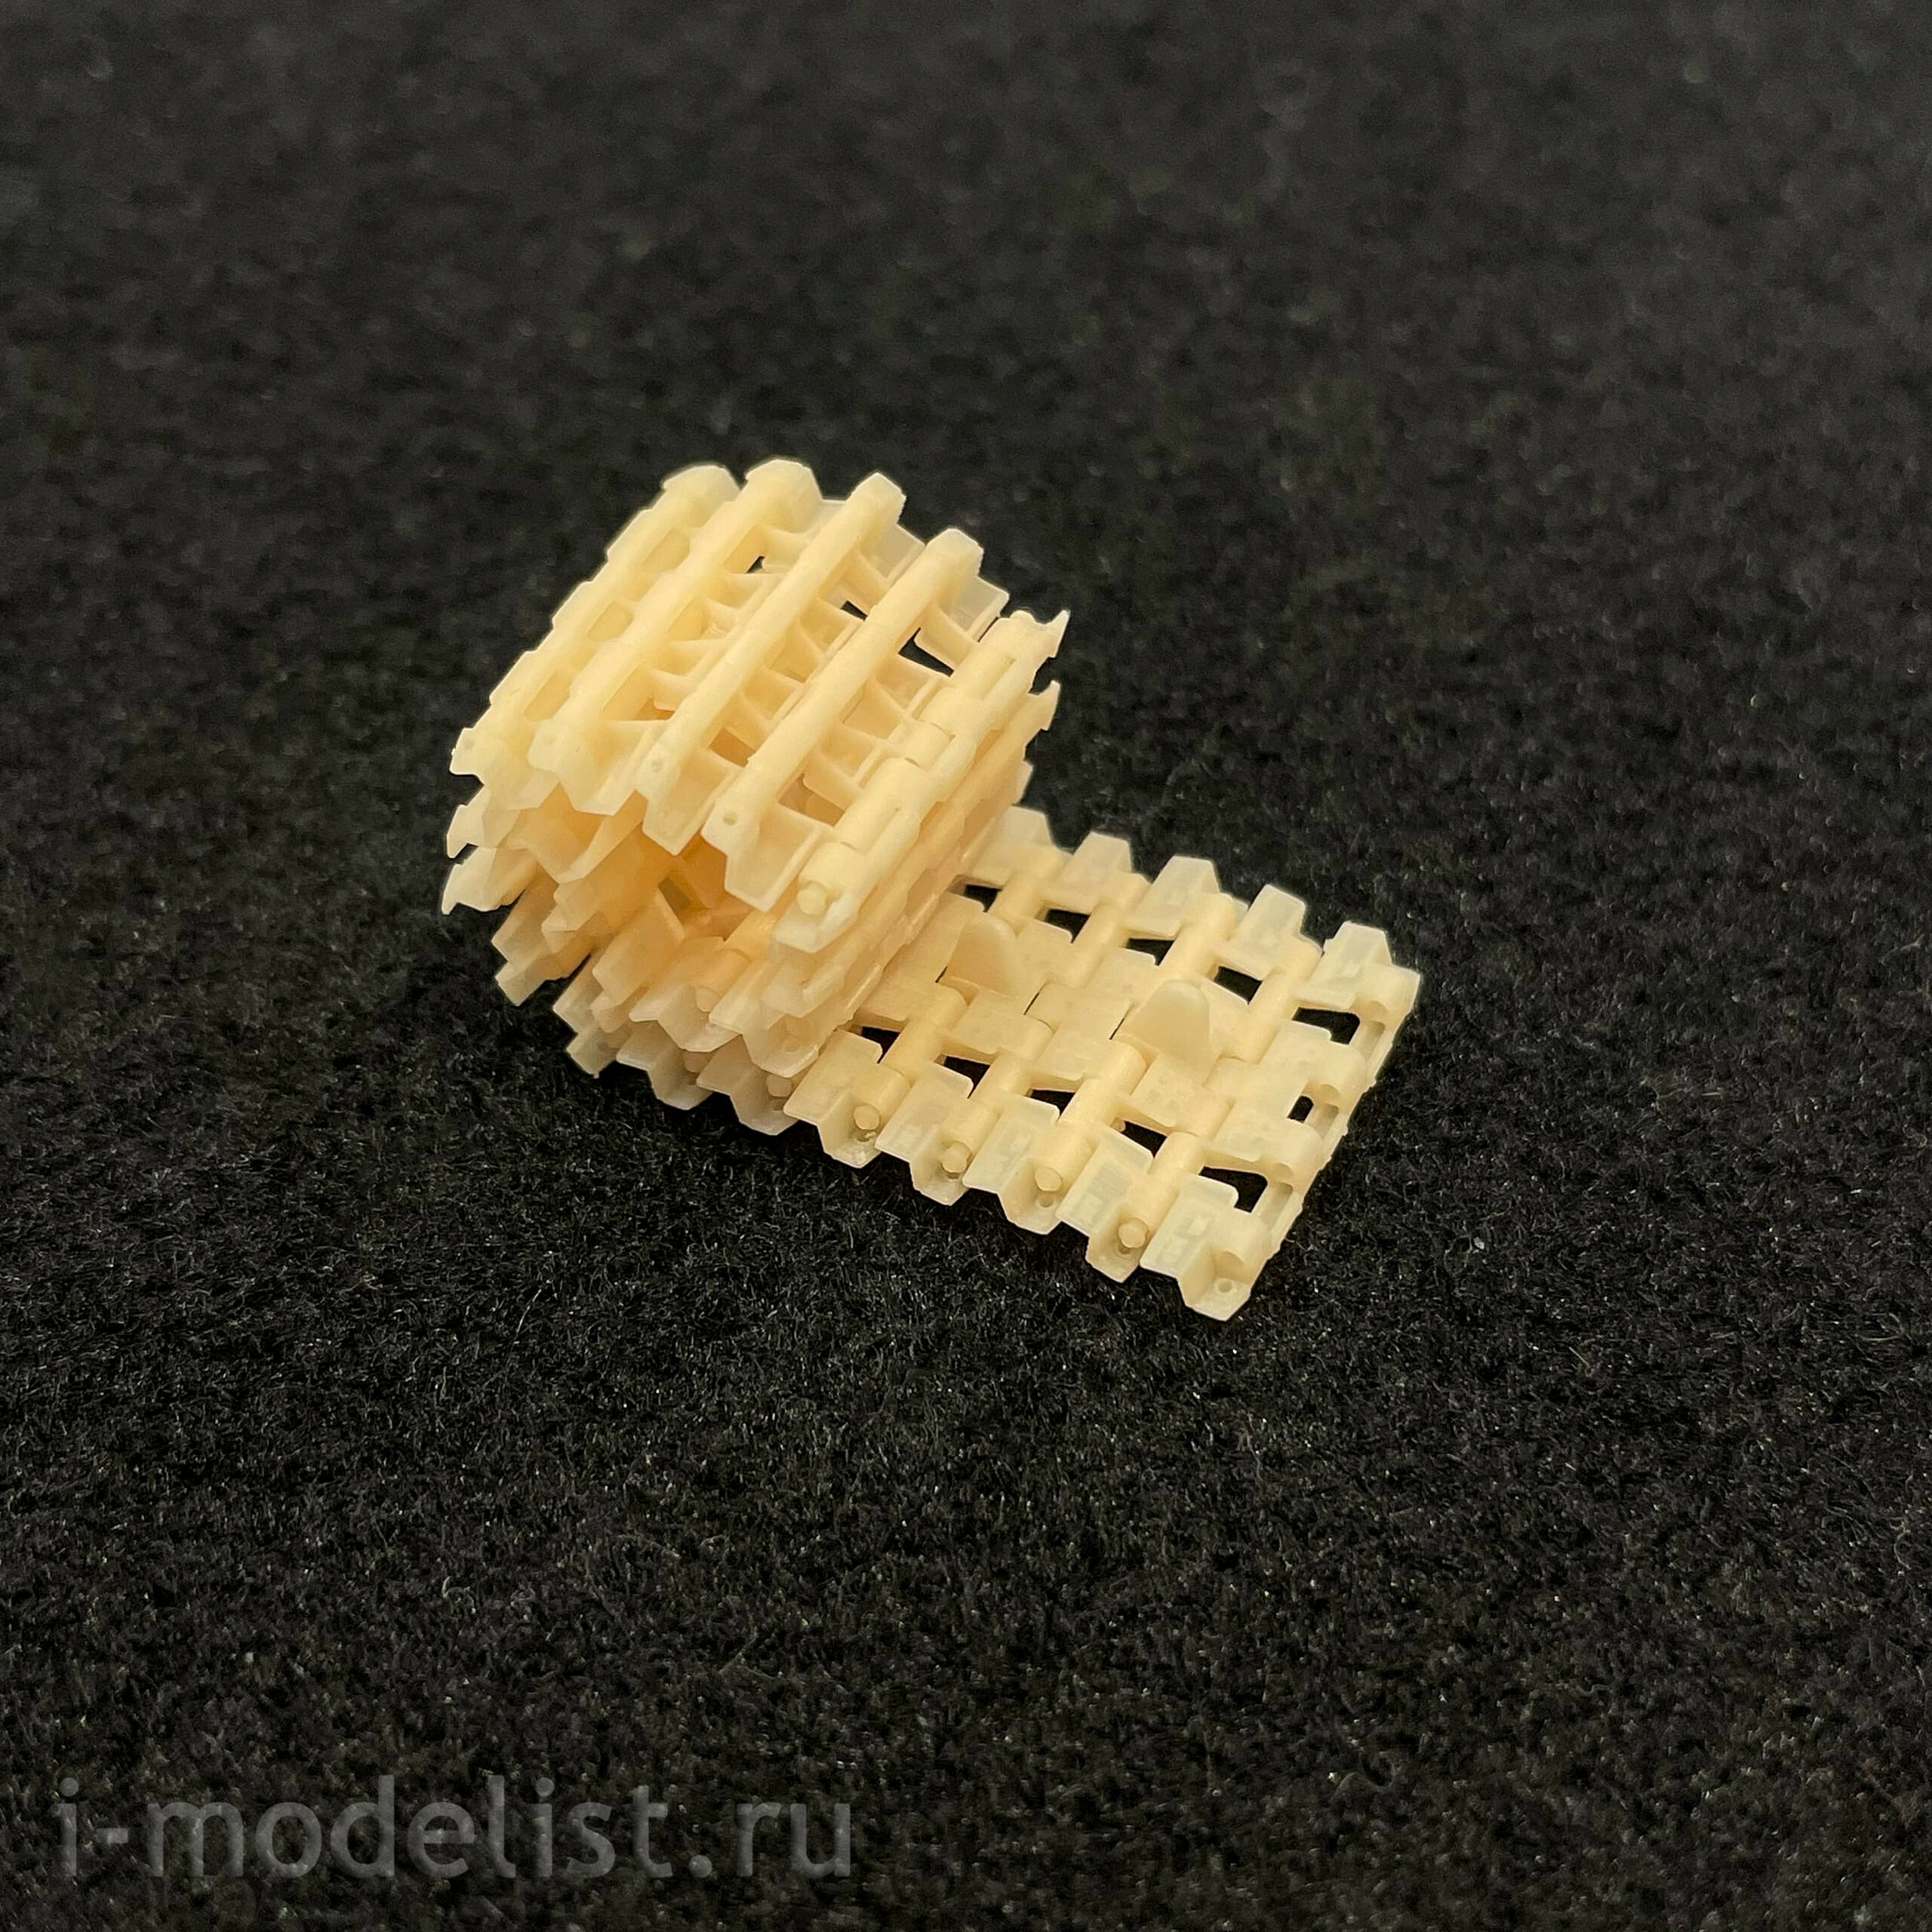 Im35114 Imodelist 1/35 Траки наборные на полупальцах для Ferdinand (3D печать)